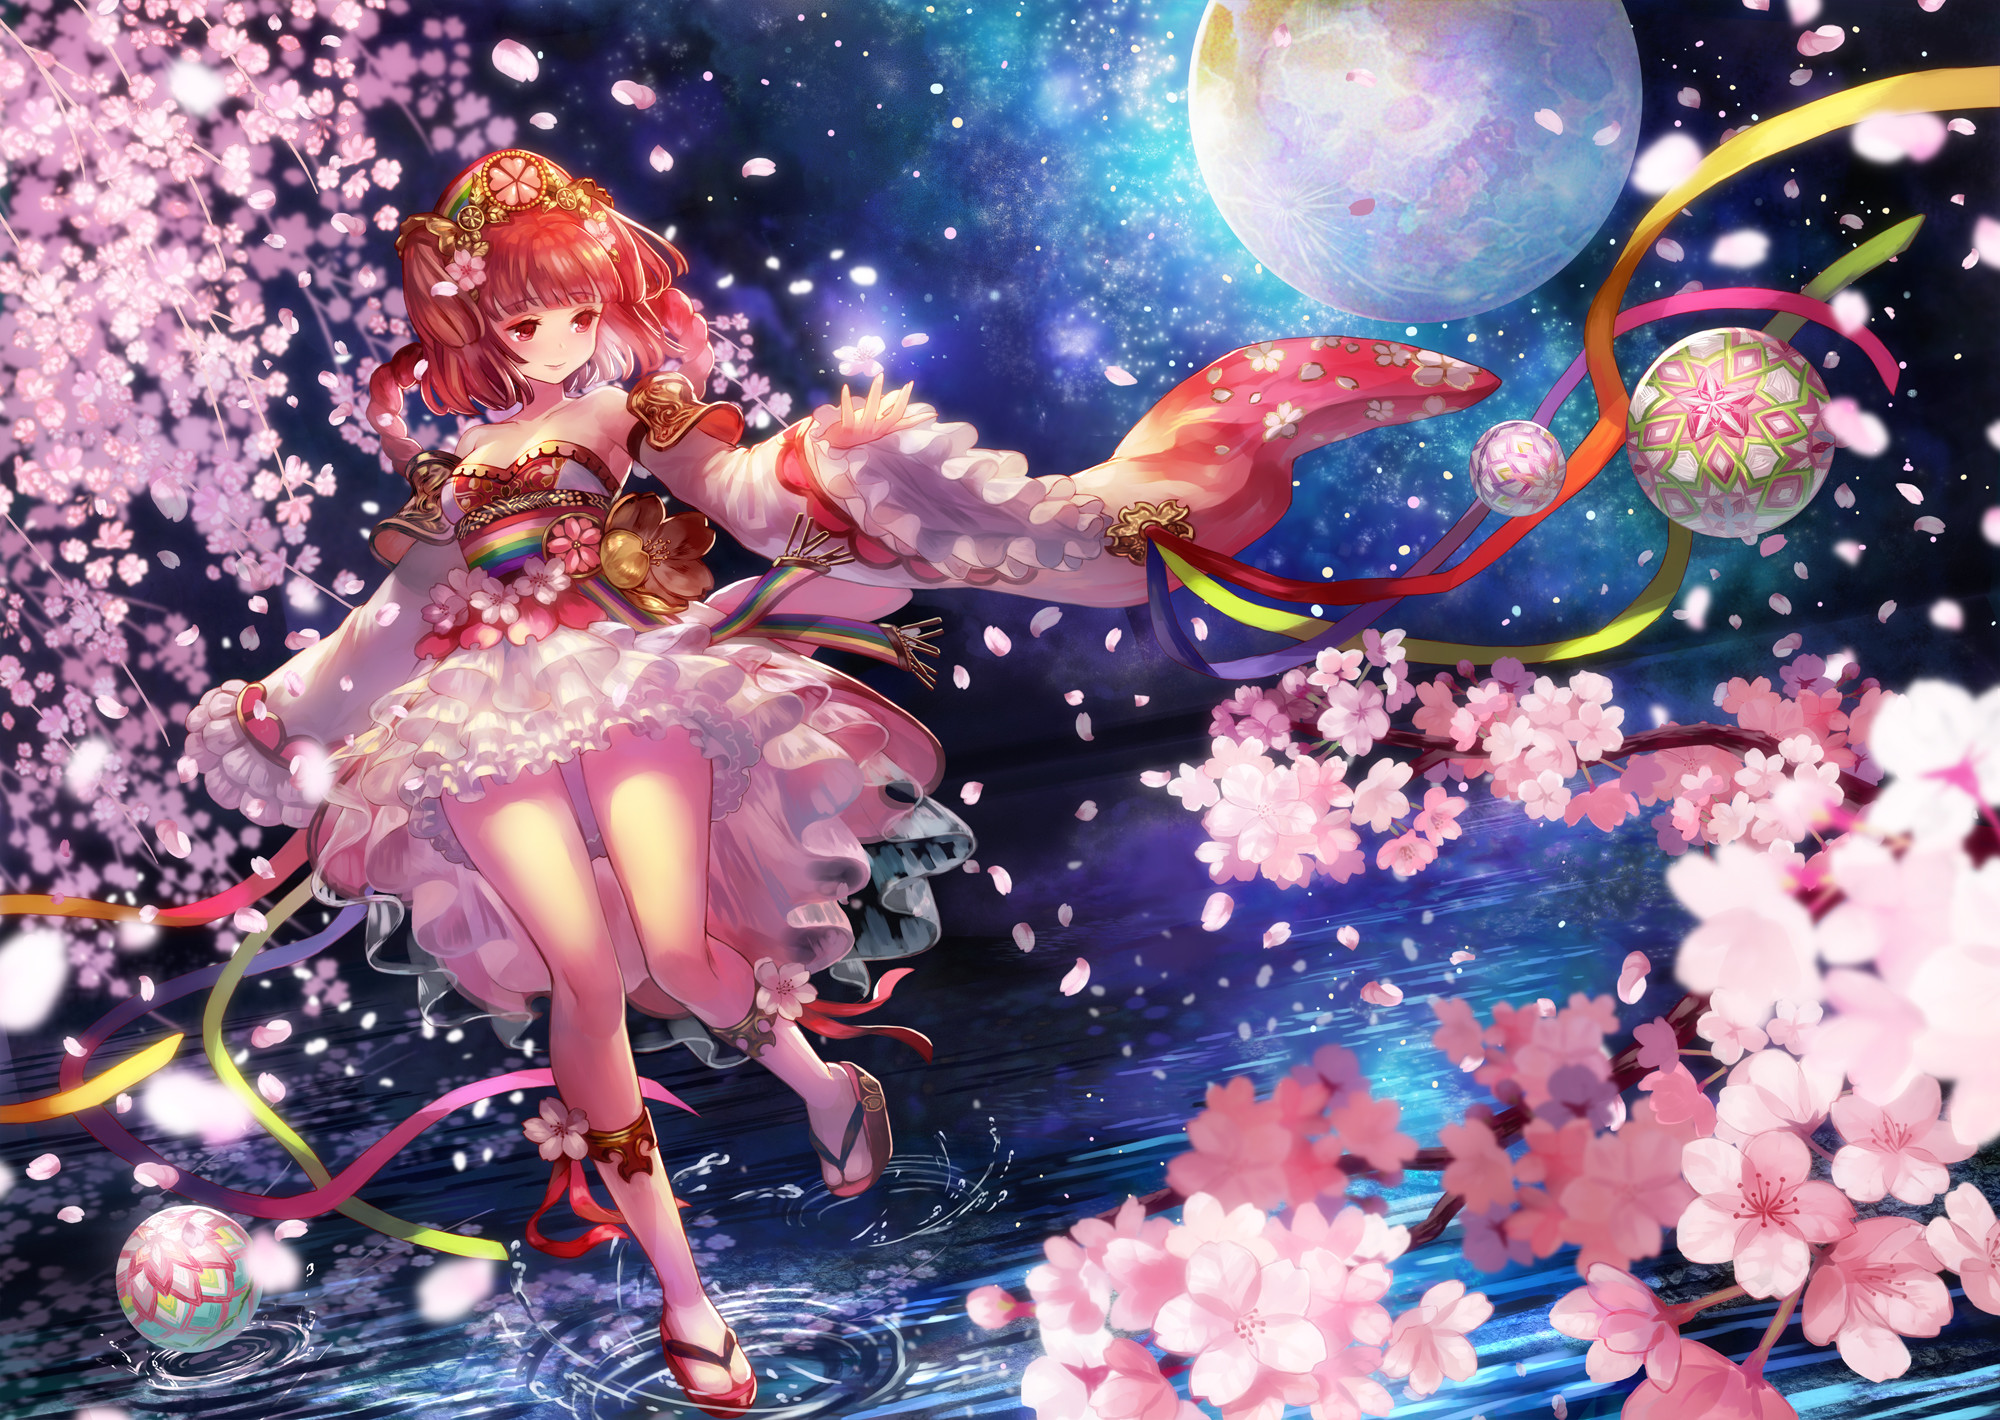 Anime Cherry Blossom Aesthetics  Beauty of an Anime World  YouTube